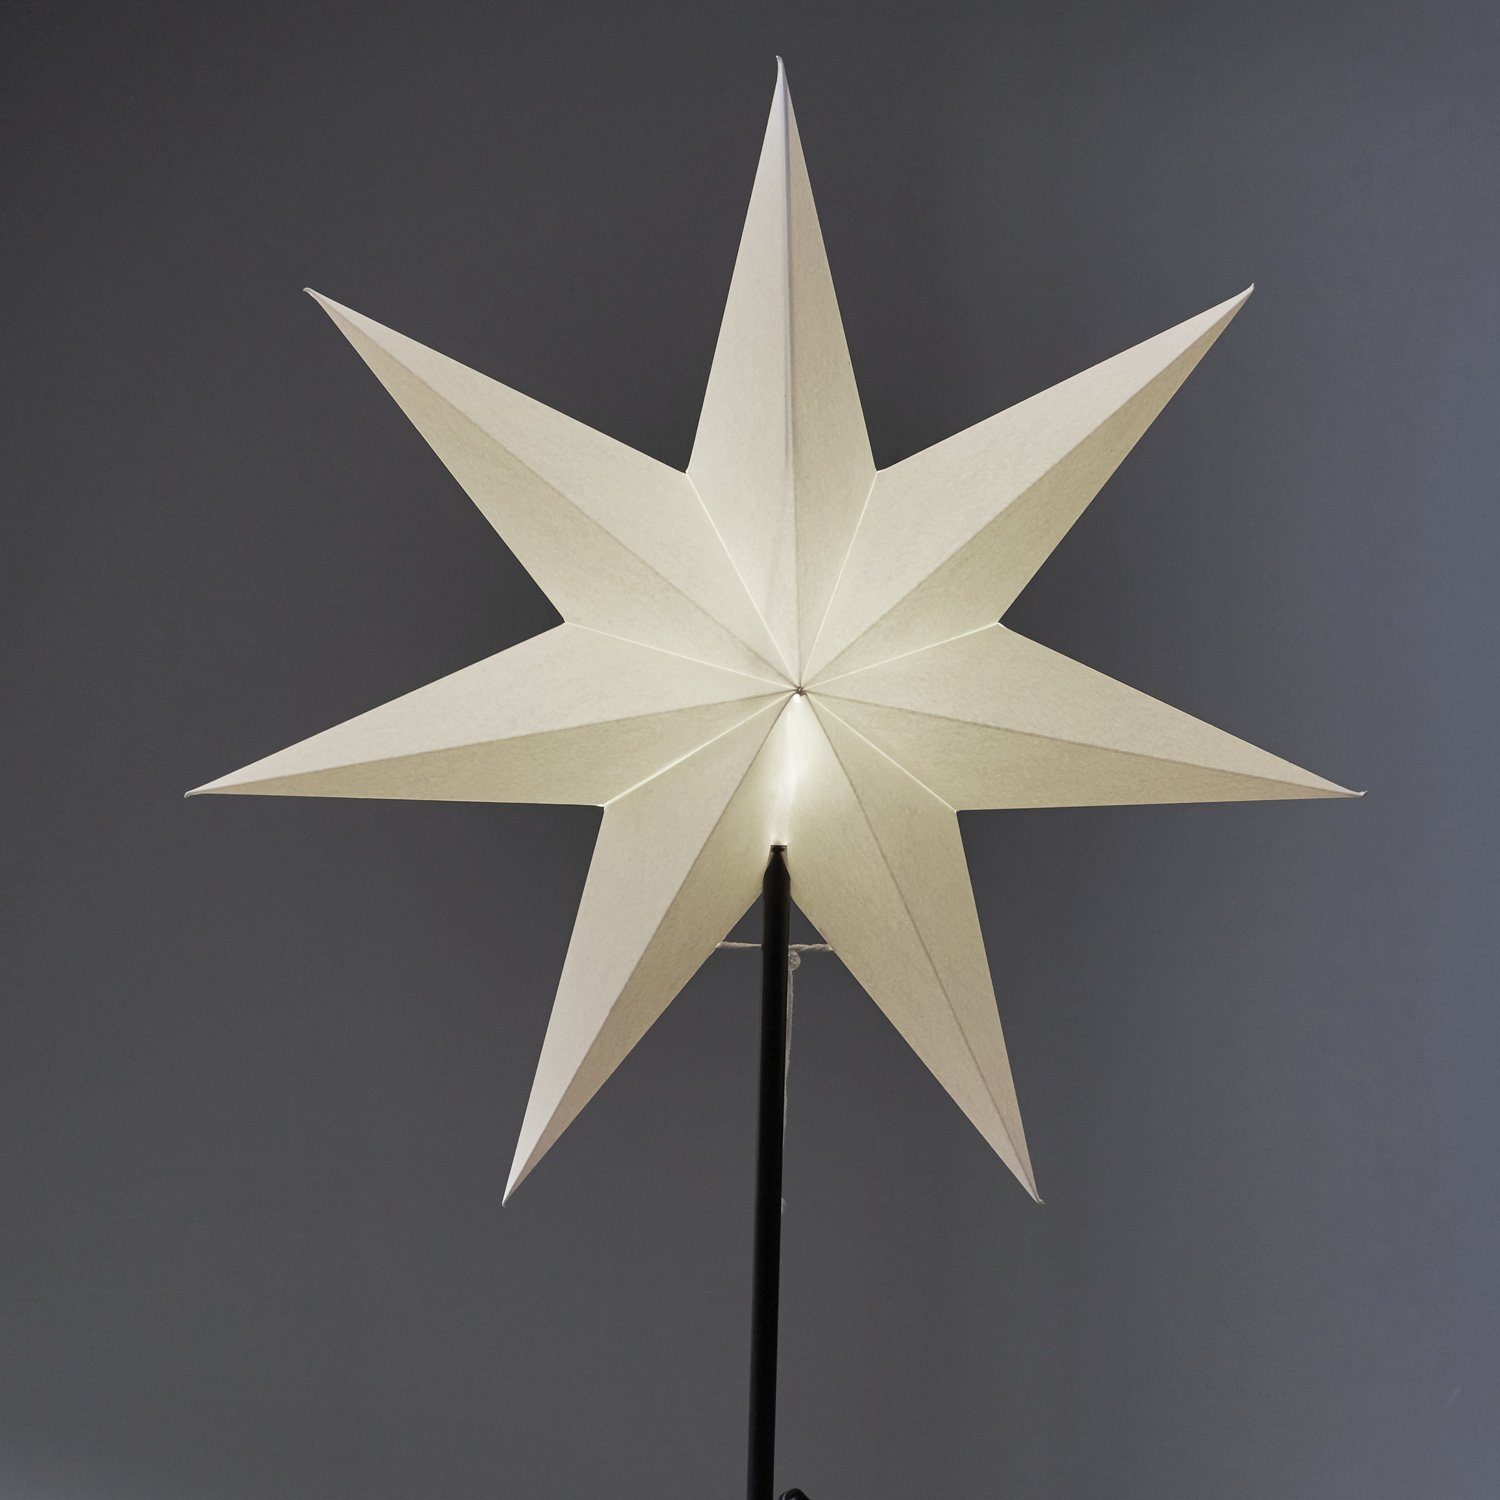 stehend E14 Kabel inkl. Weihnachtsstern 7-zackig TRADING Stern STAR weiß 55cm Papierstern LED